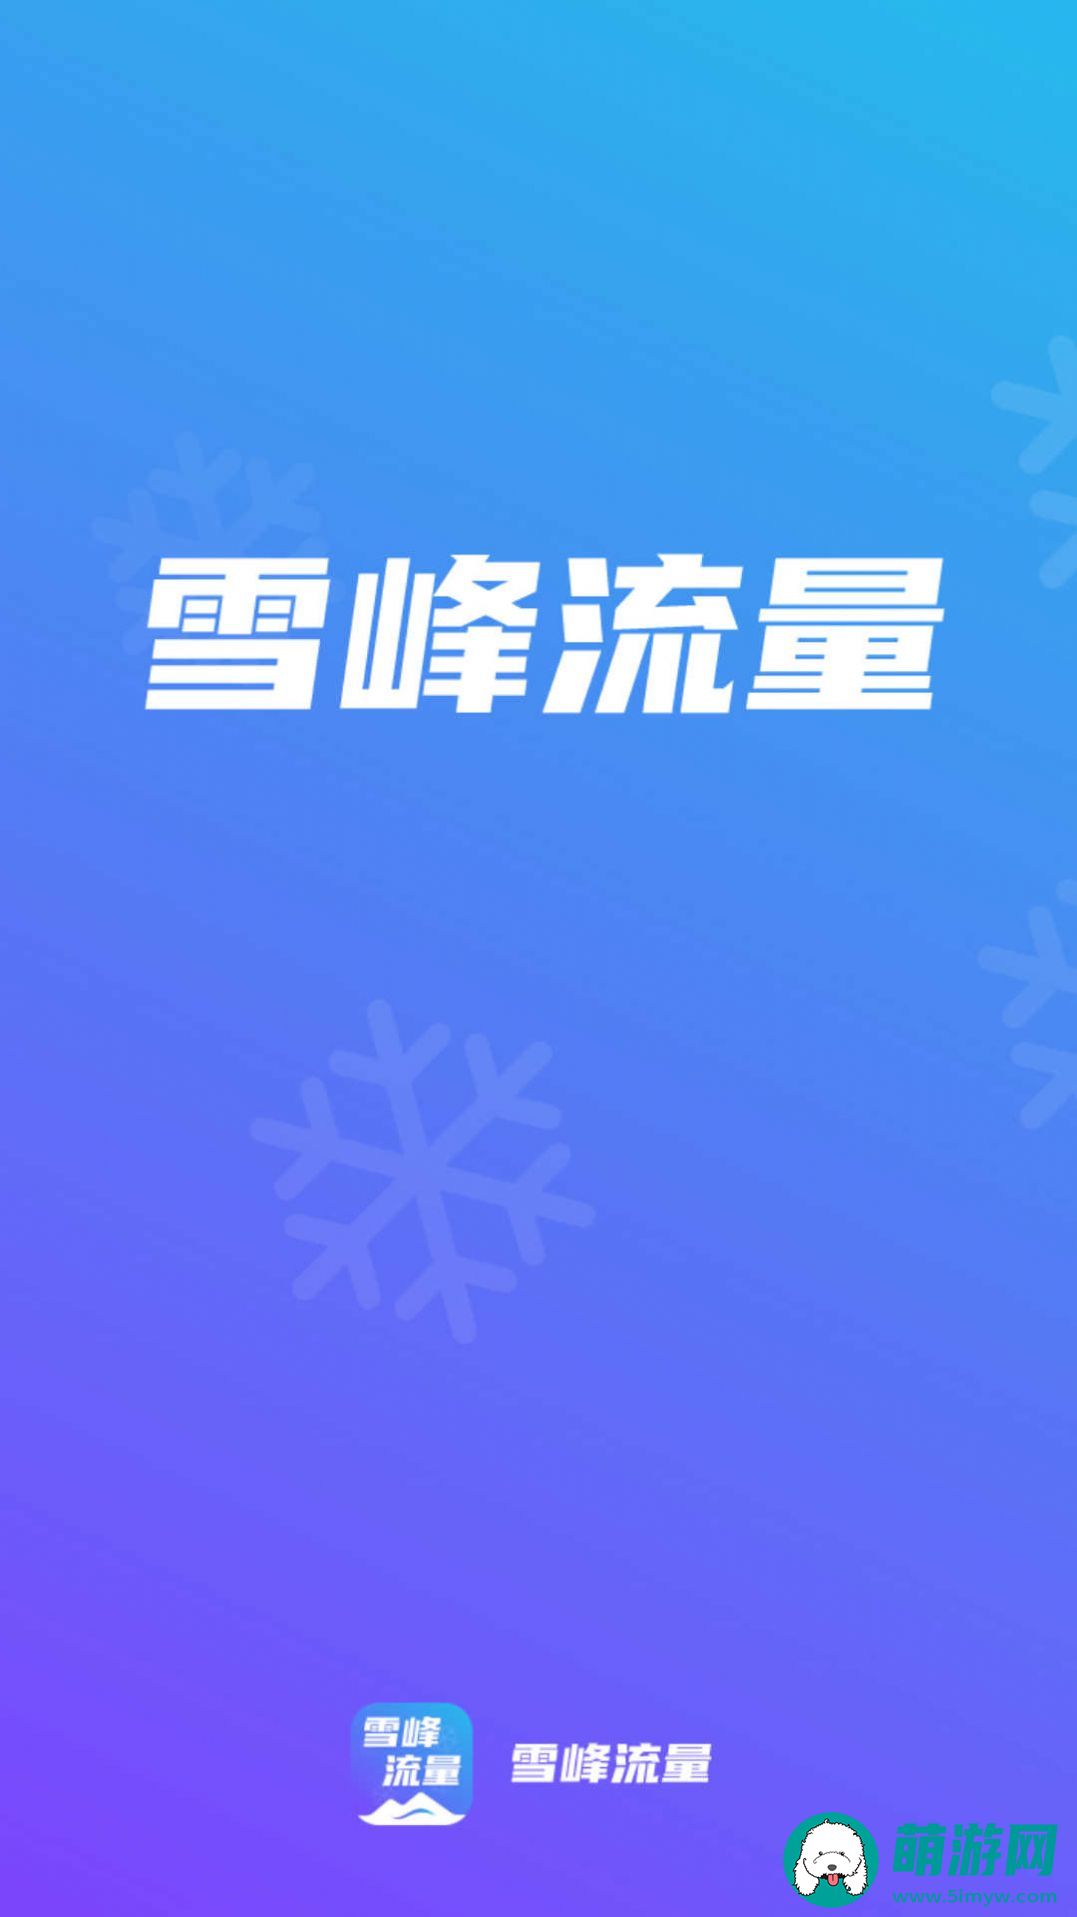 雪峰流量手机版安卓下载v2.0.1